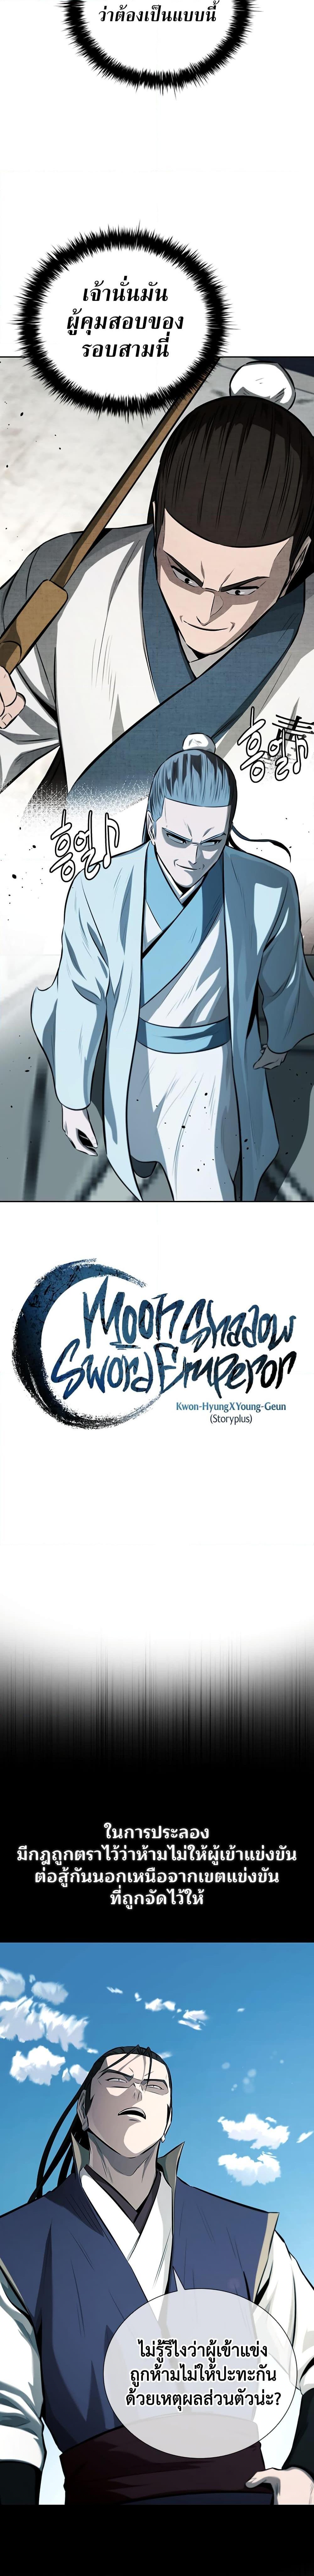 Moon Shadow Sword Emperor 78 04